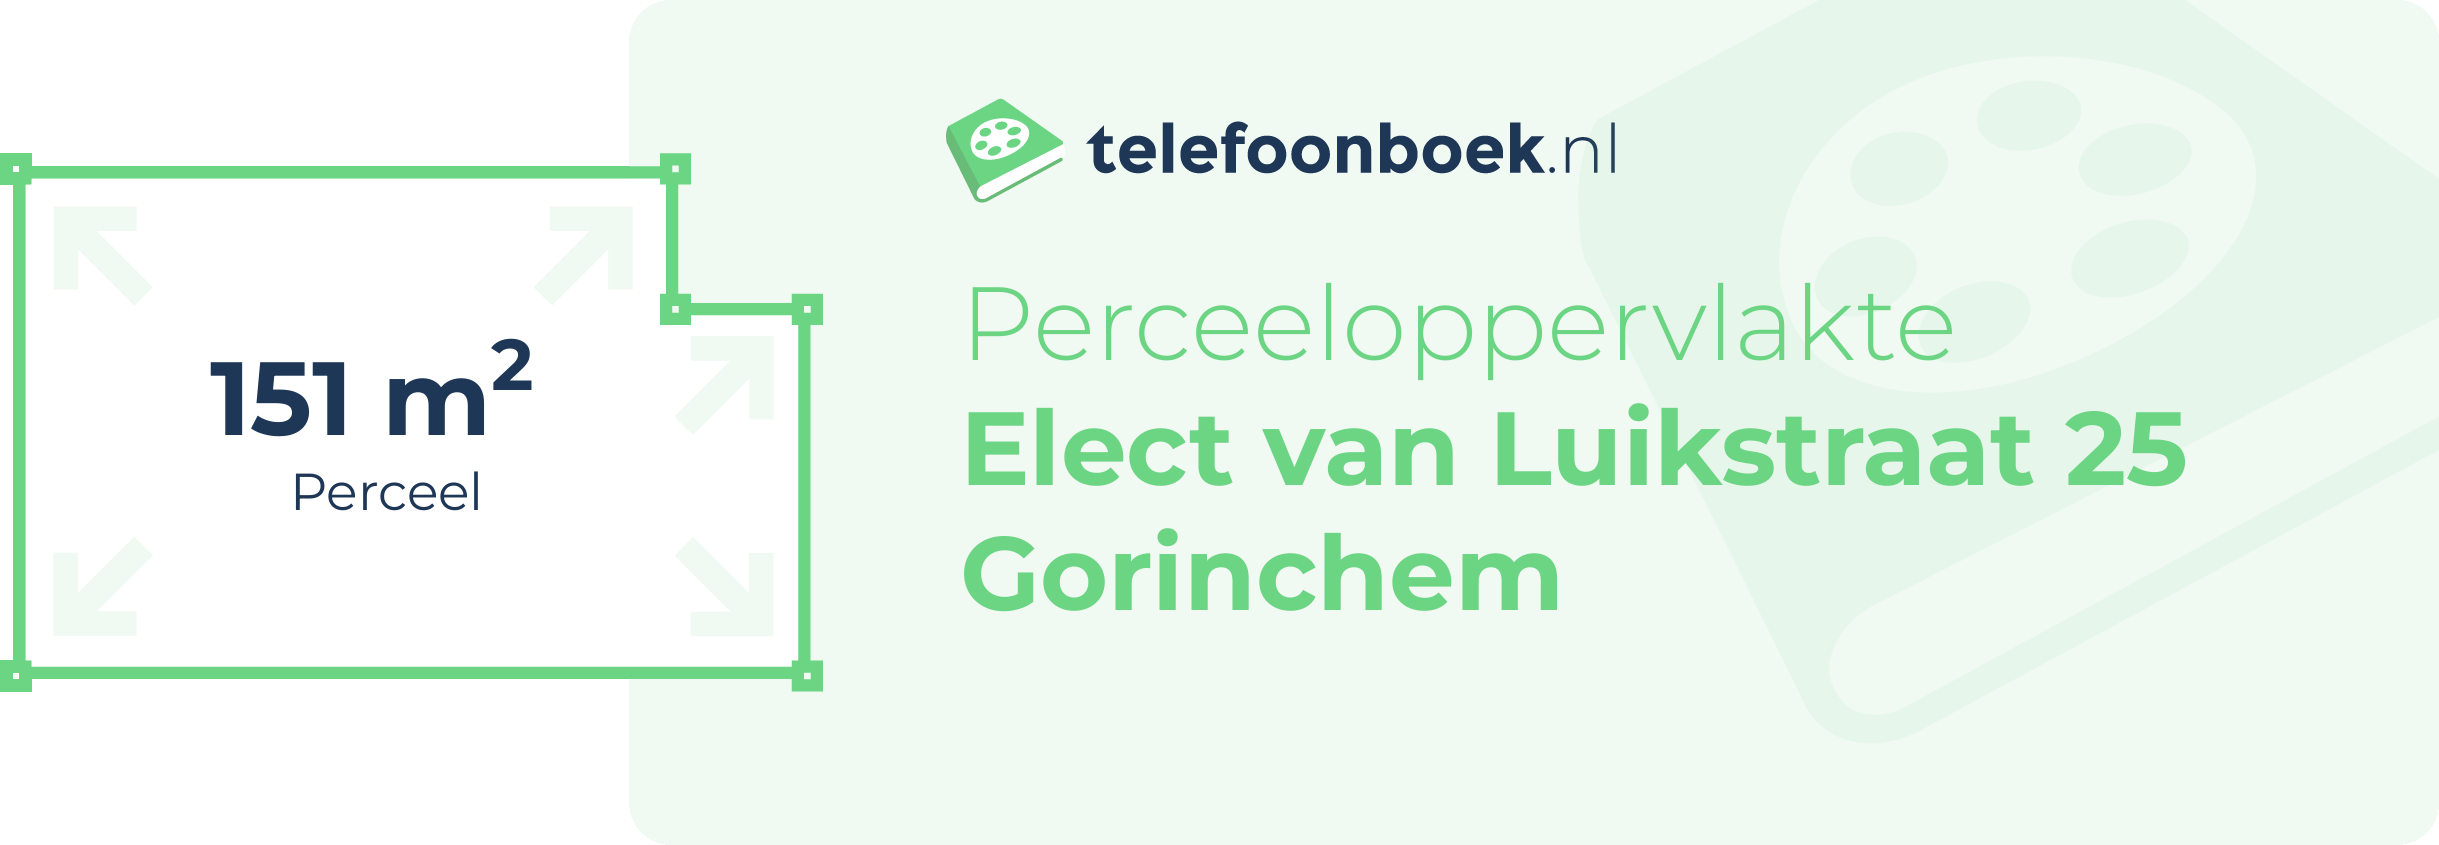 Perceeloppervlakte Elect Van Luikstraat 25 Gorinchem